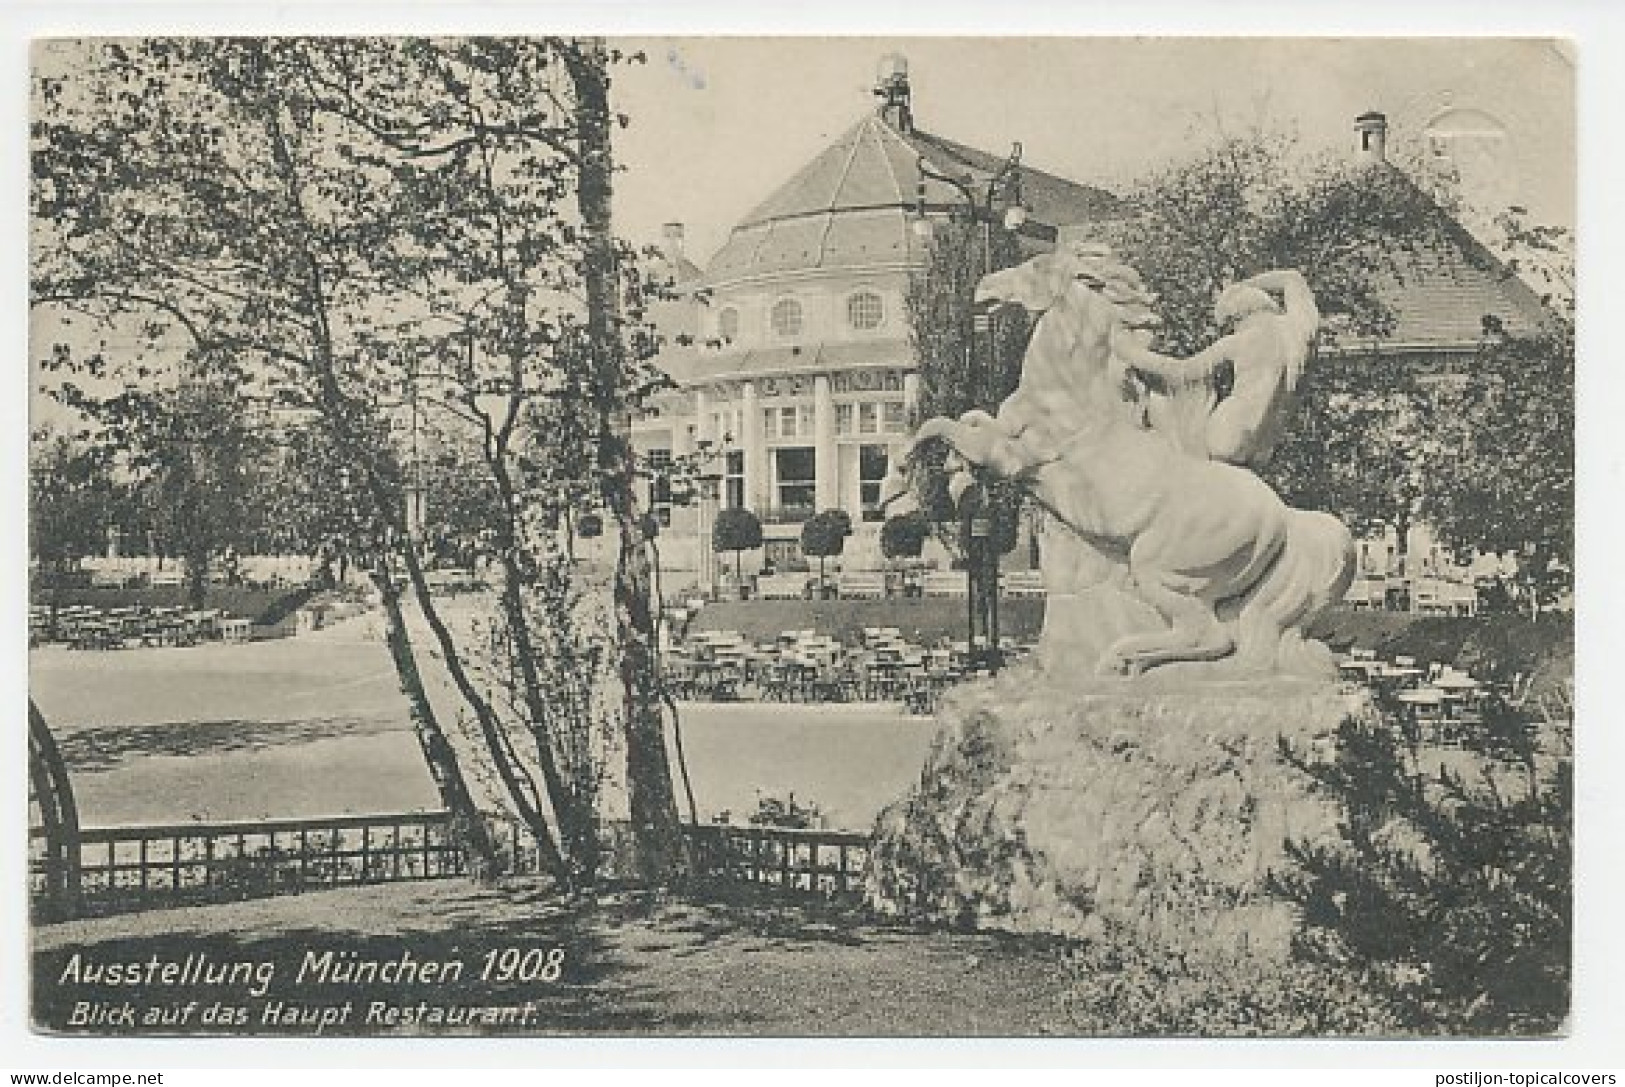 Postal Stationery Bayern 1908 Exhibition Munchen - Restaurant - Horse - Scultura